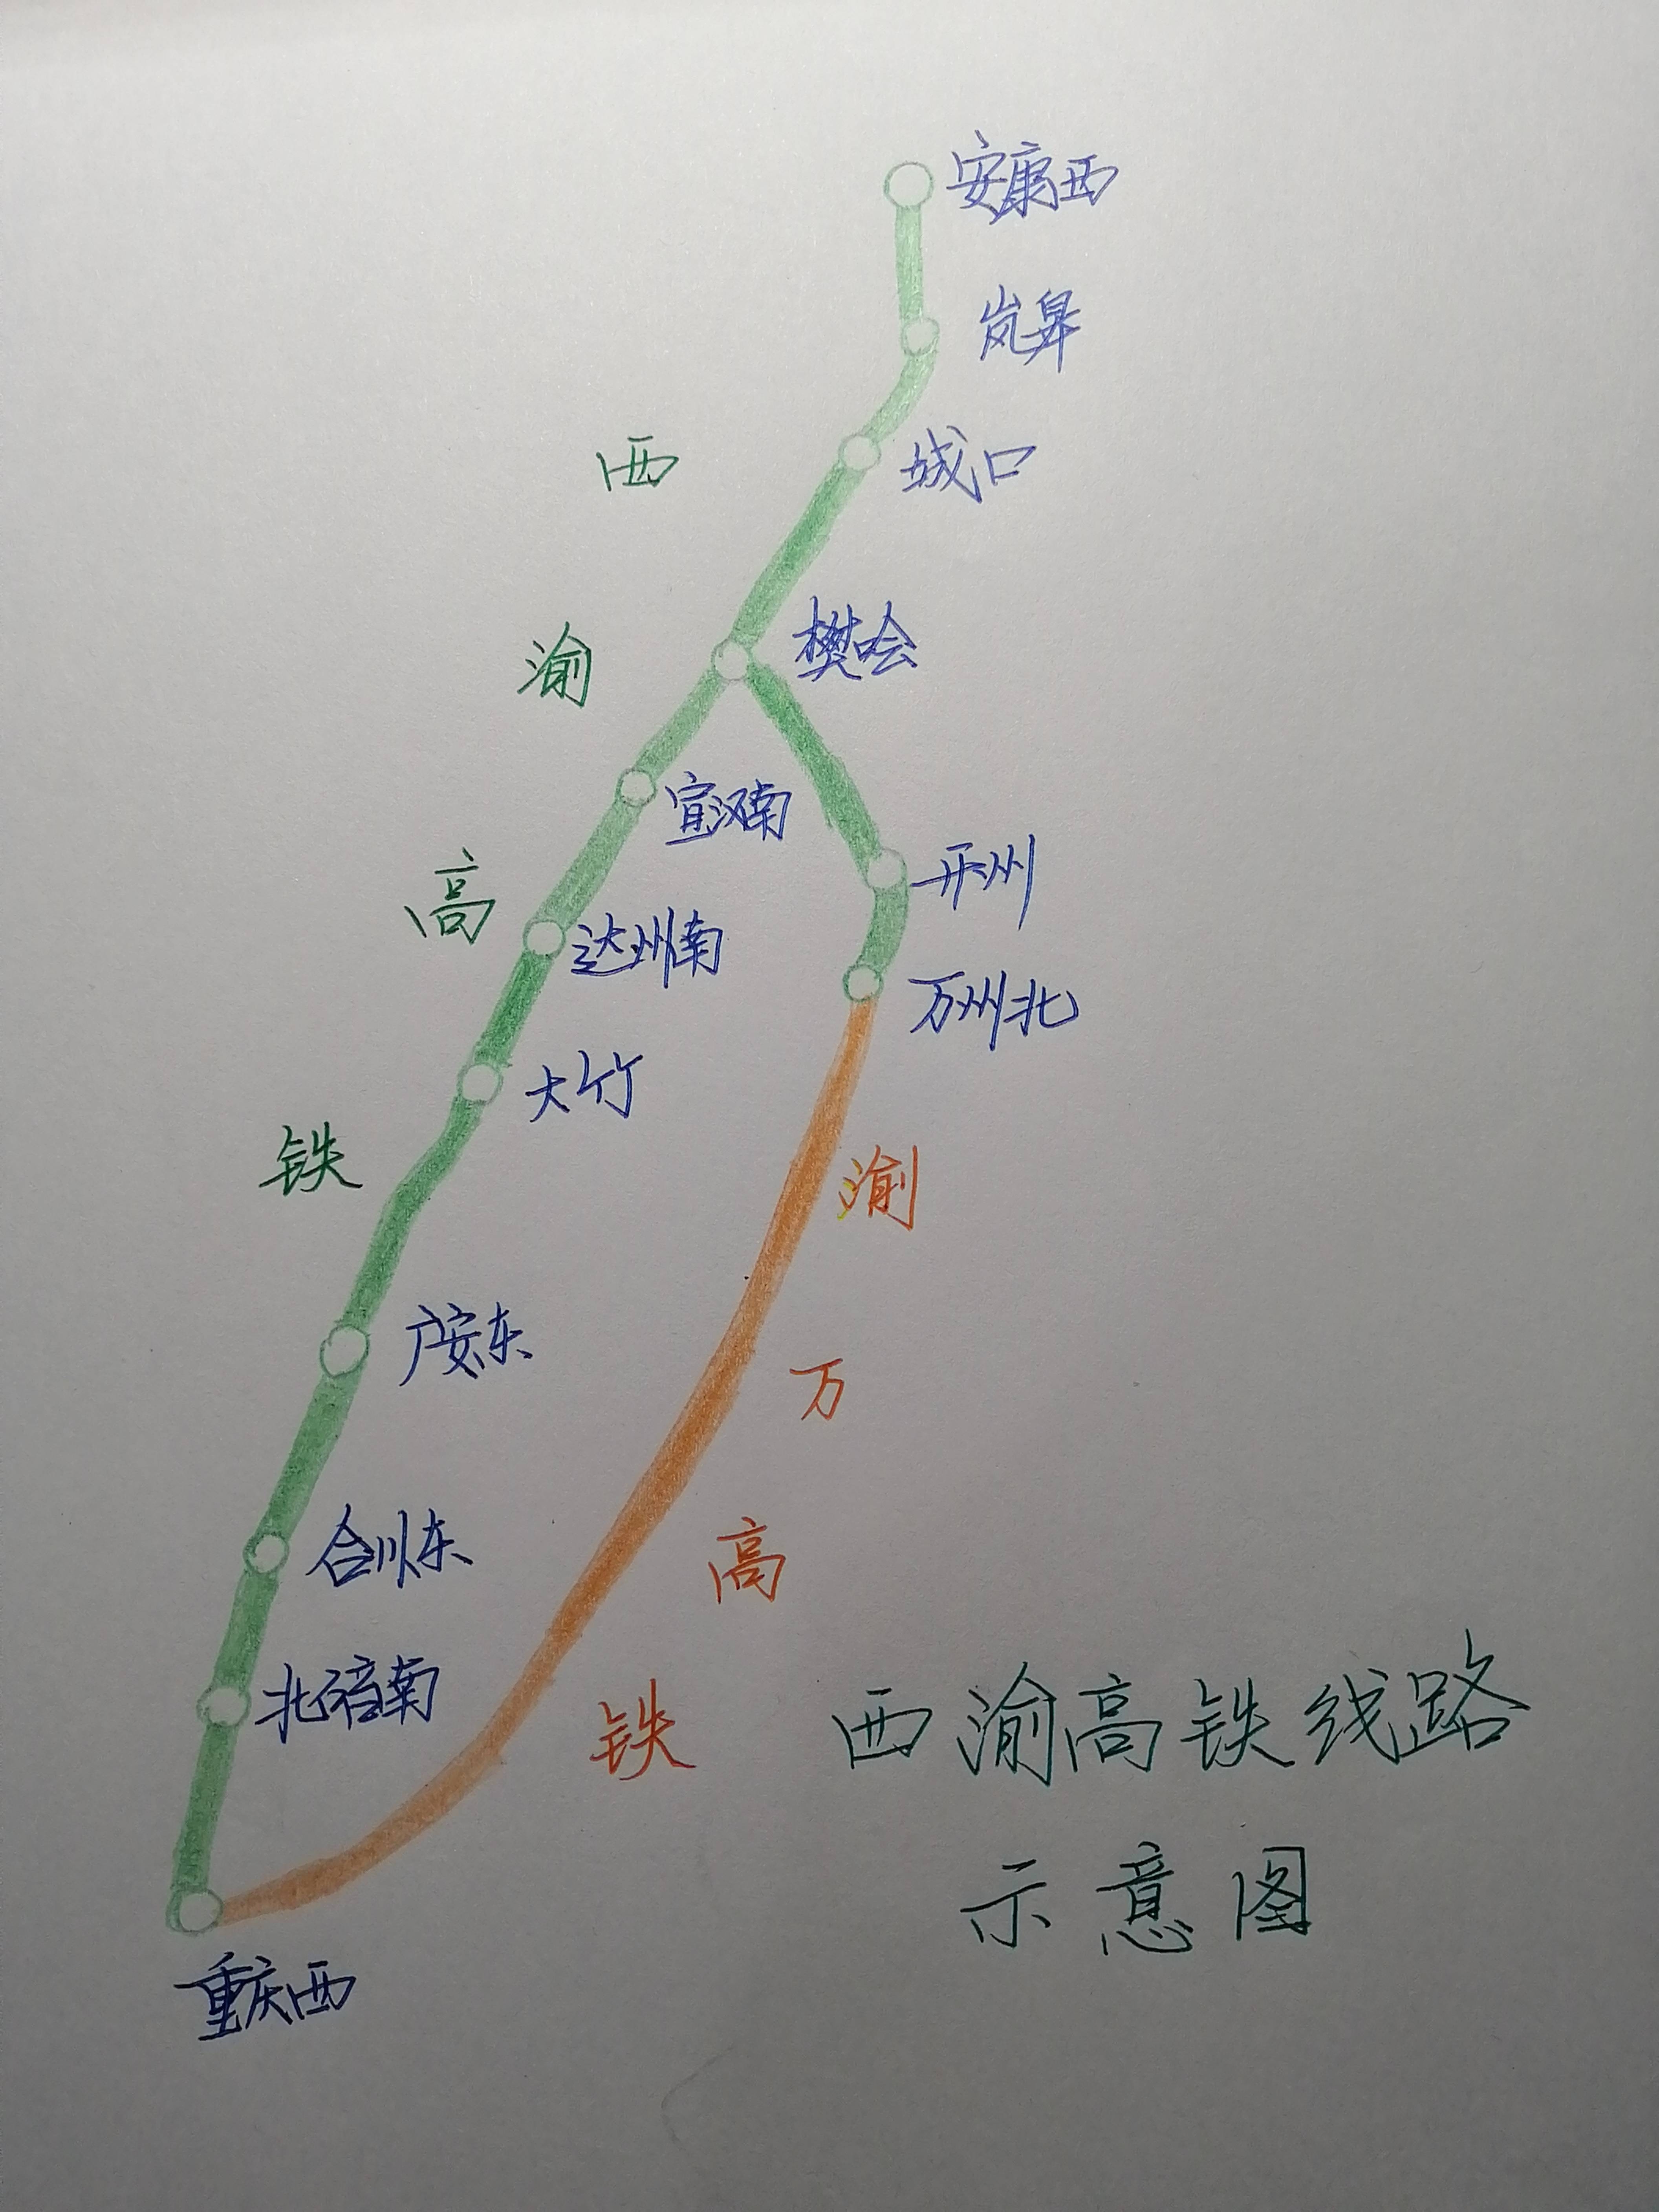 渝西高铁樊哙路线图图片